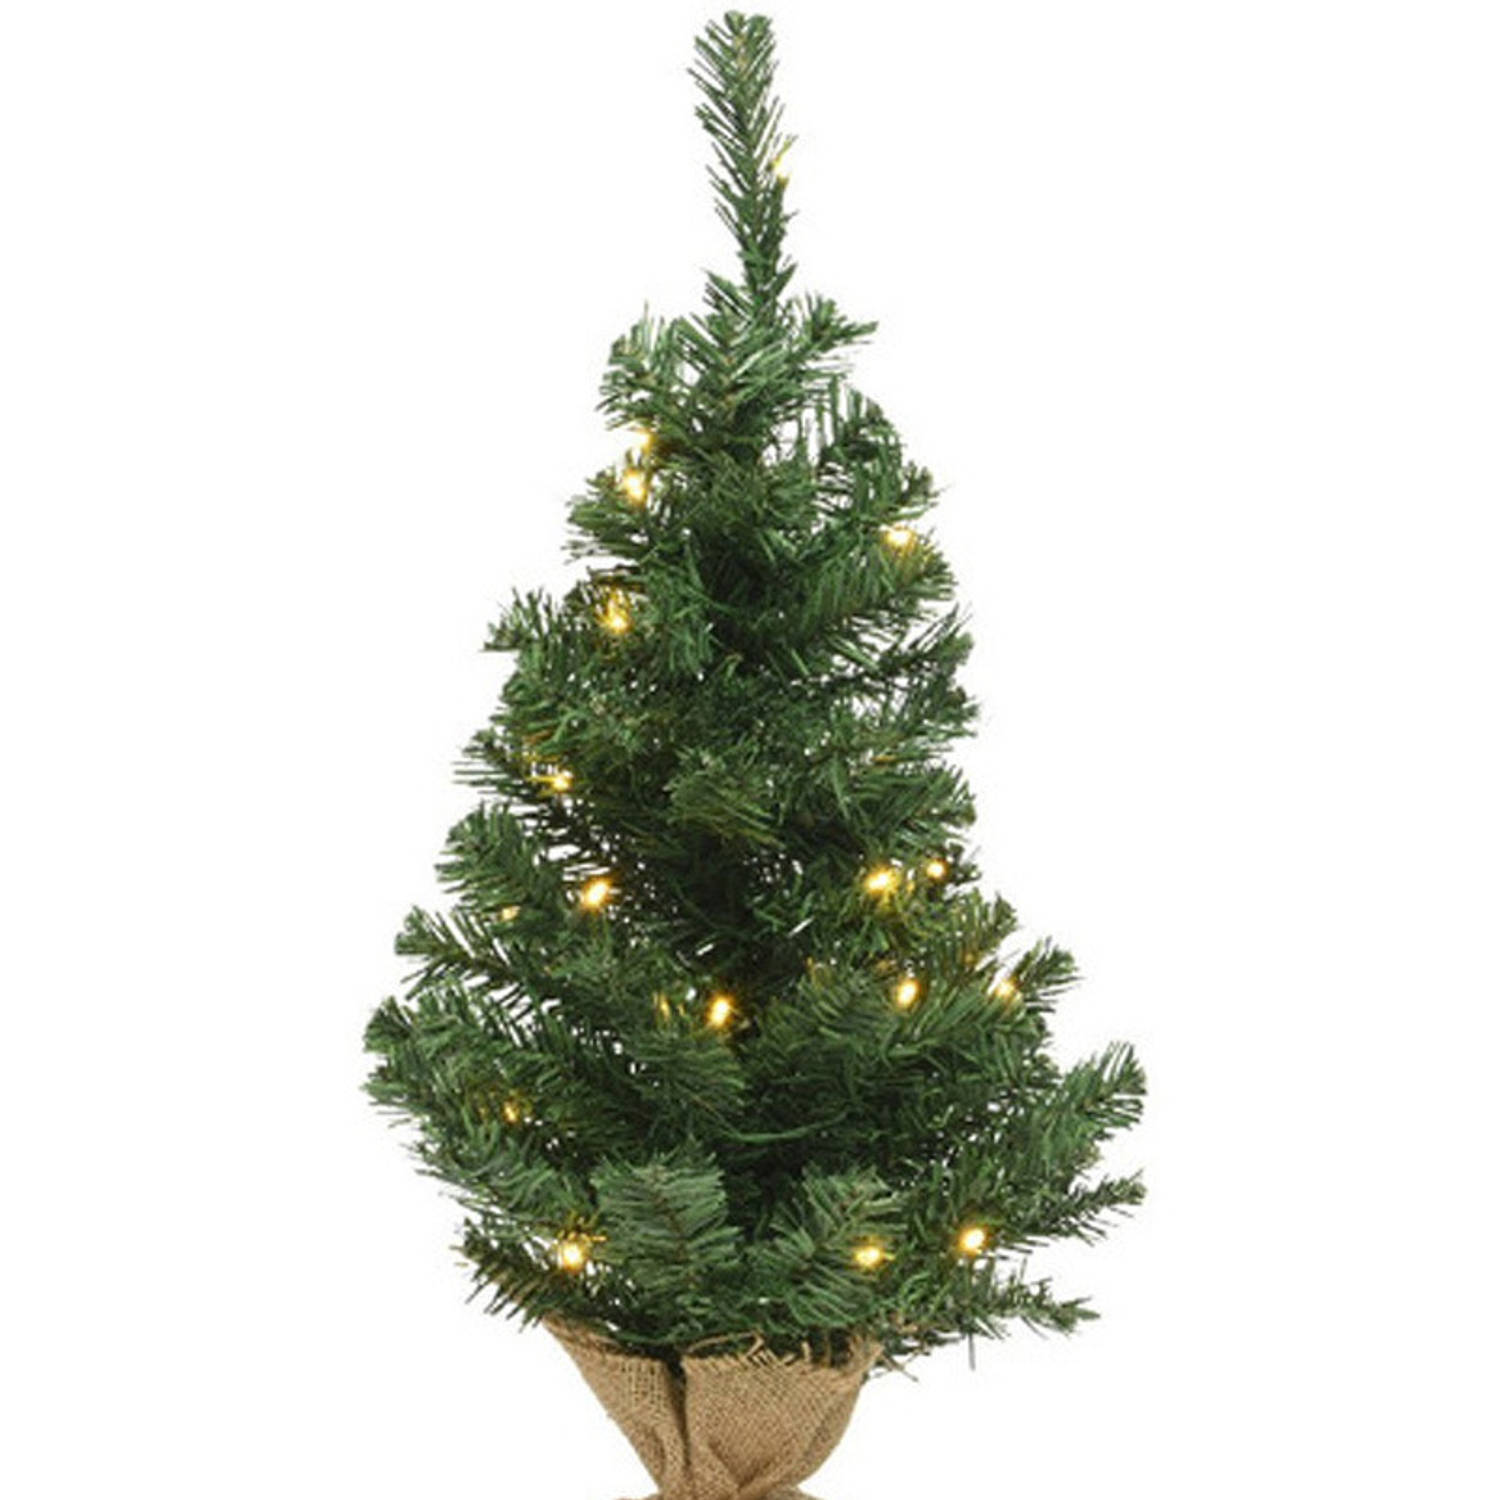 Kerst kerstbomen groen in jute zak met verlichting 45 cm - Kunstkerstboom